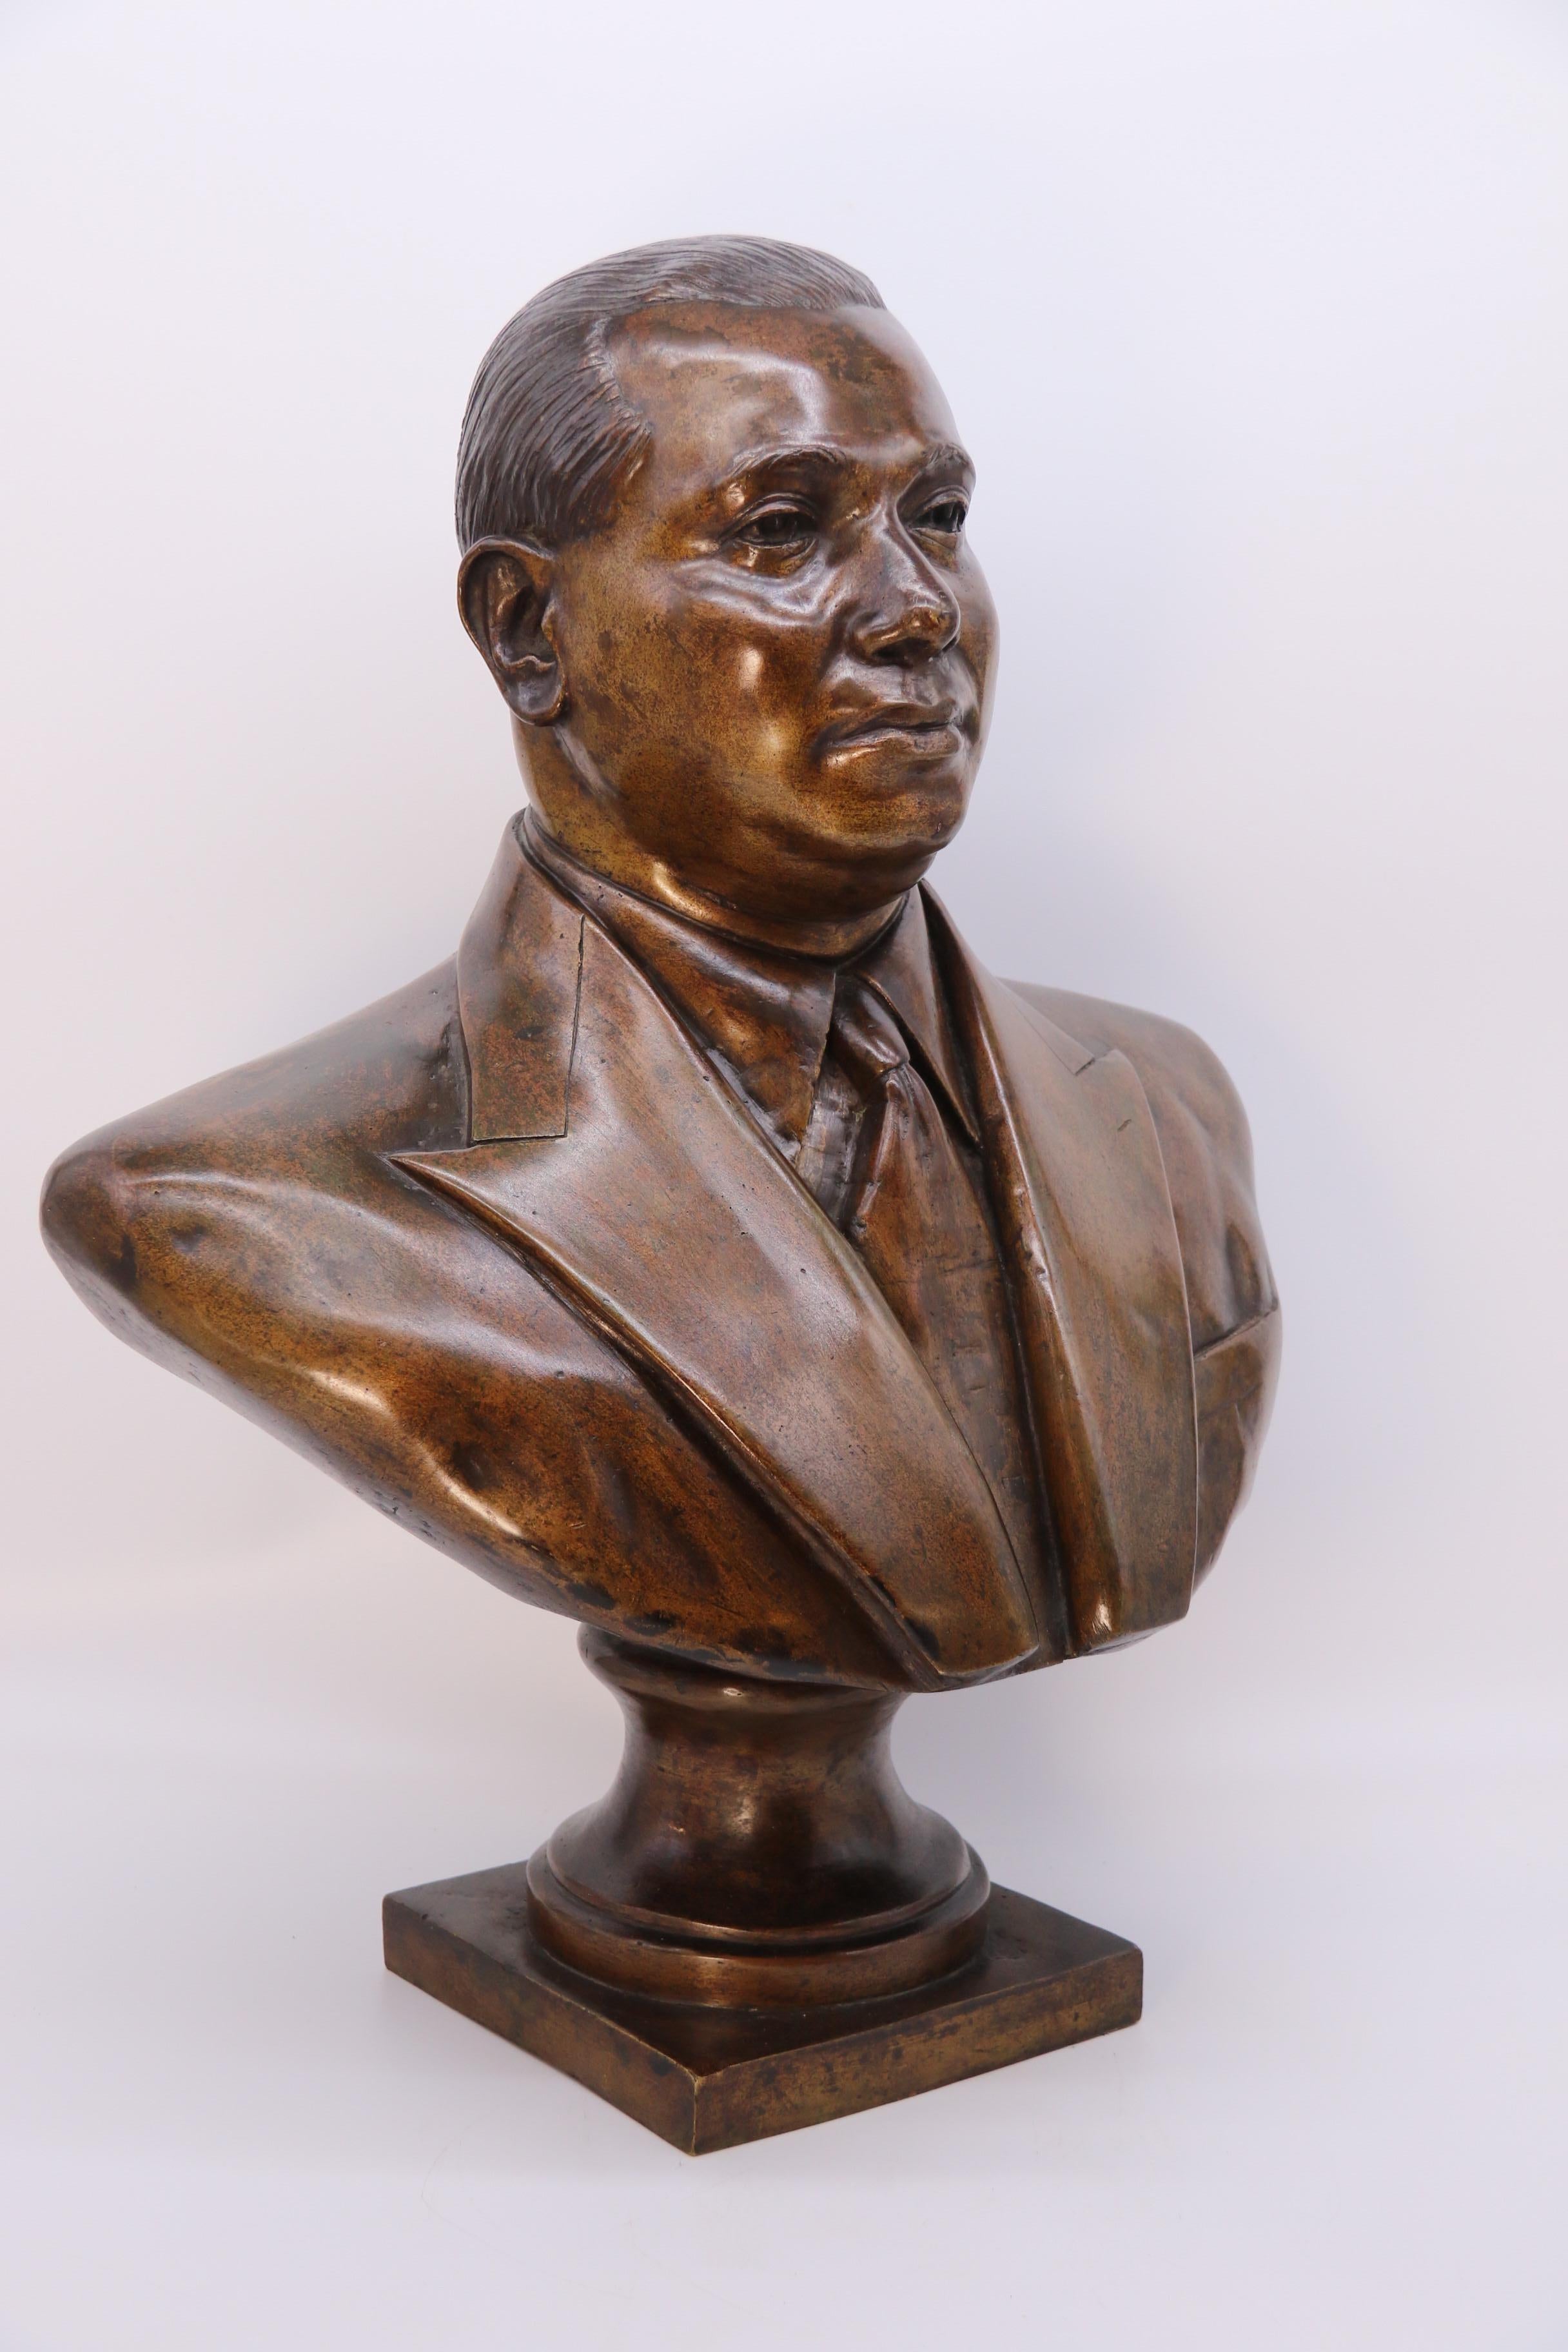 Ce buste en bronze très inhabituel, presque grandeur nature, représente un homme très élégant, probablement sud-américain, vêtu d'une veste de costume à double boutonnage, d'une chemise et d'une cravate. Il s'agit d'un homme relativement jeune, avec